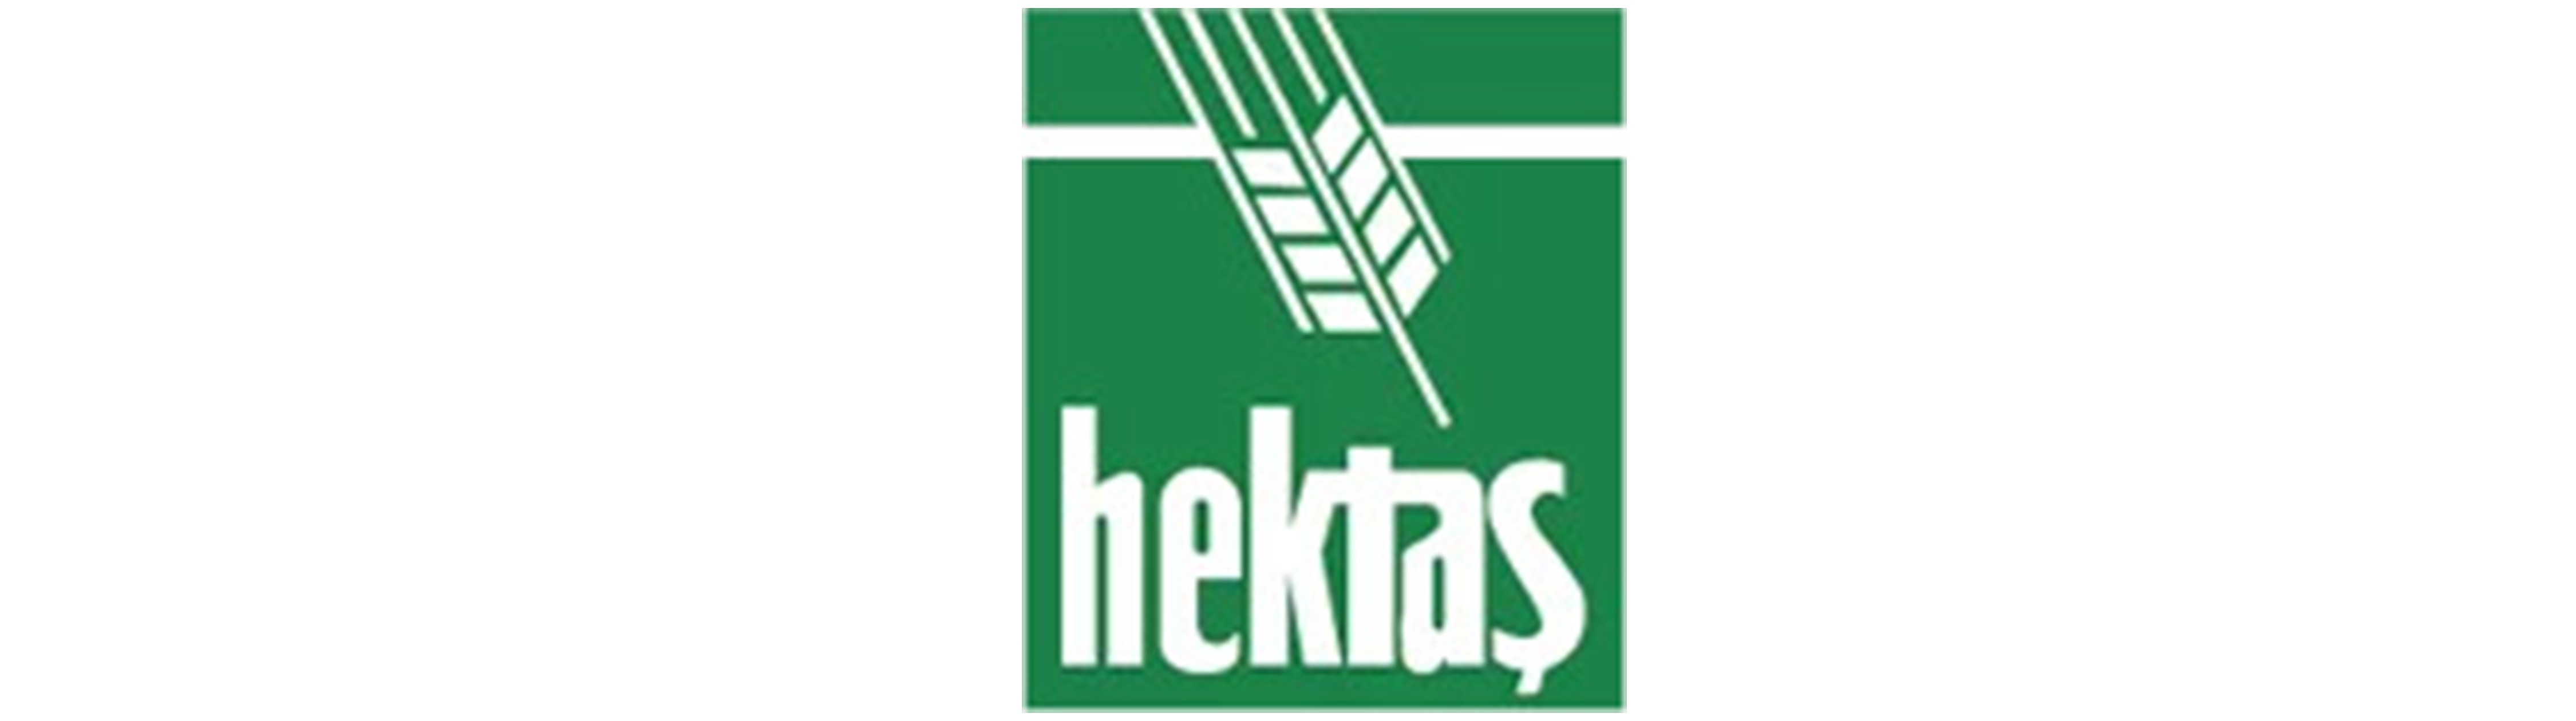 HEKTS - Hektaş